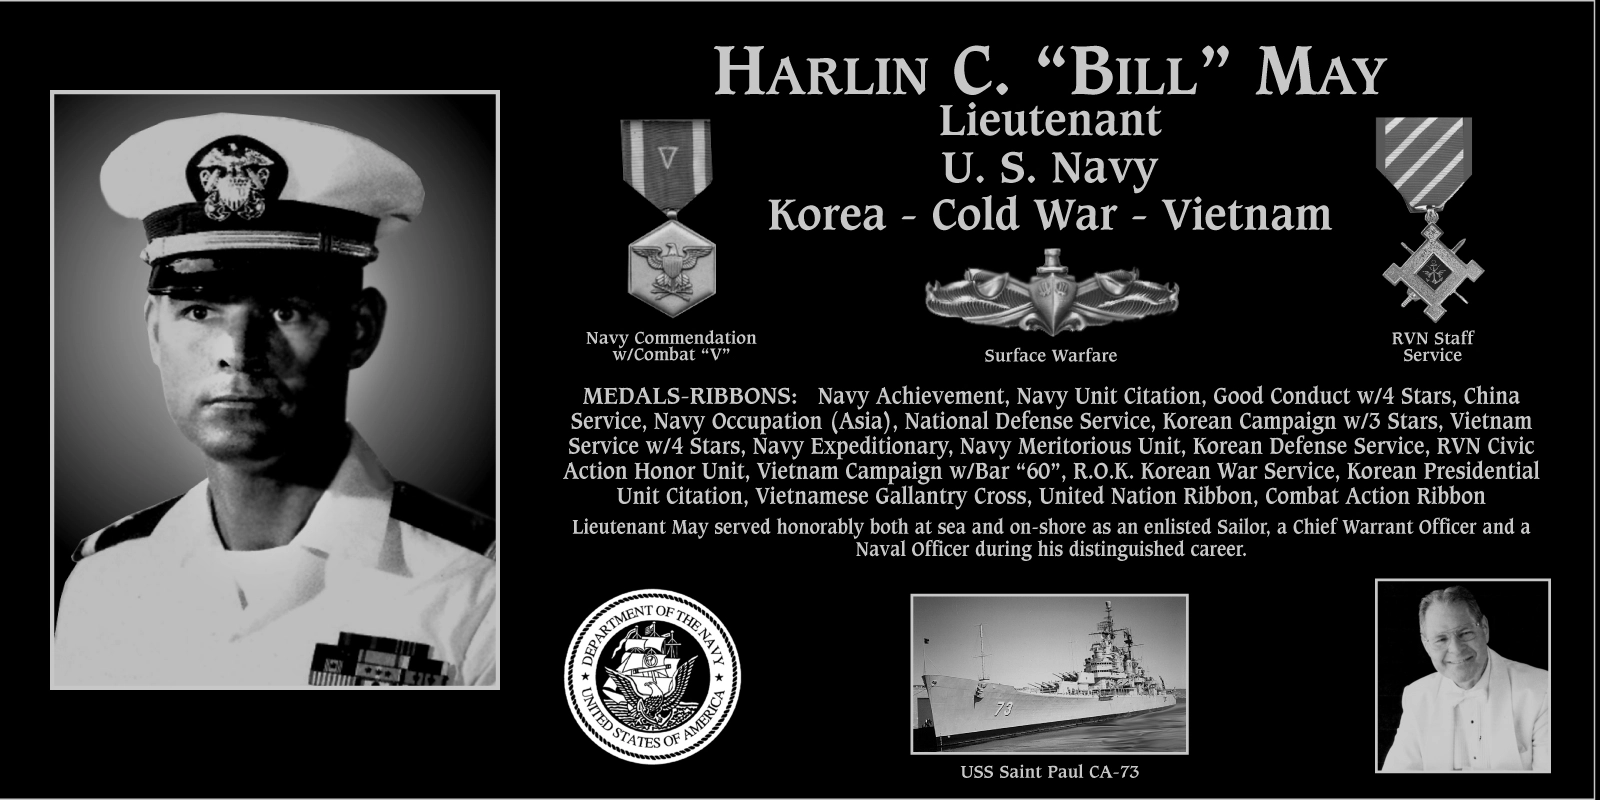 Harlin C. “Bill” May